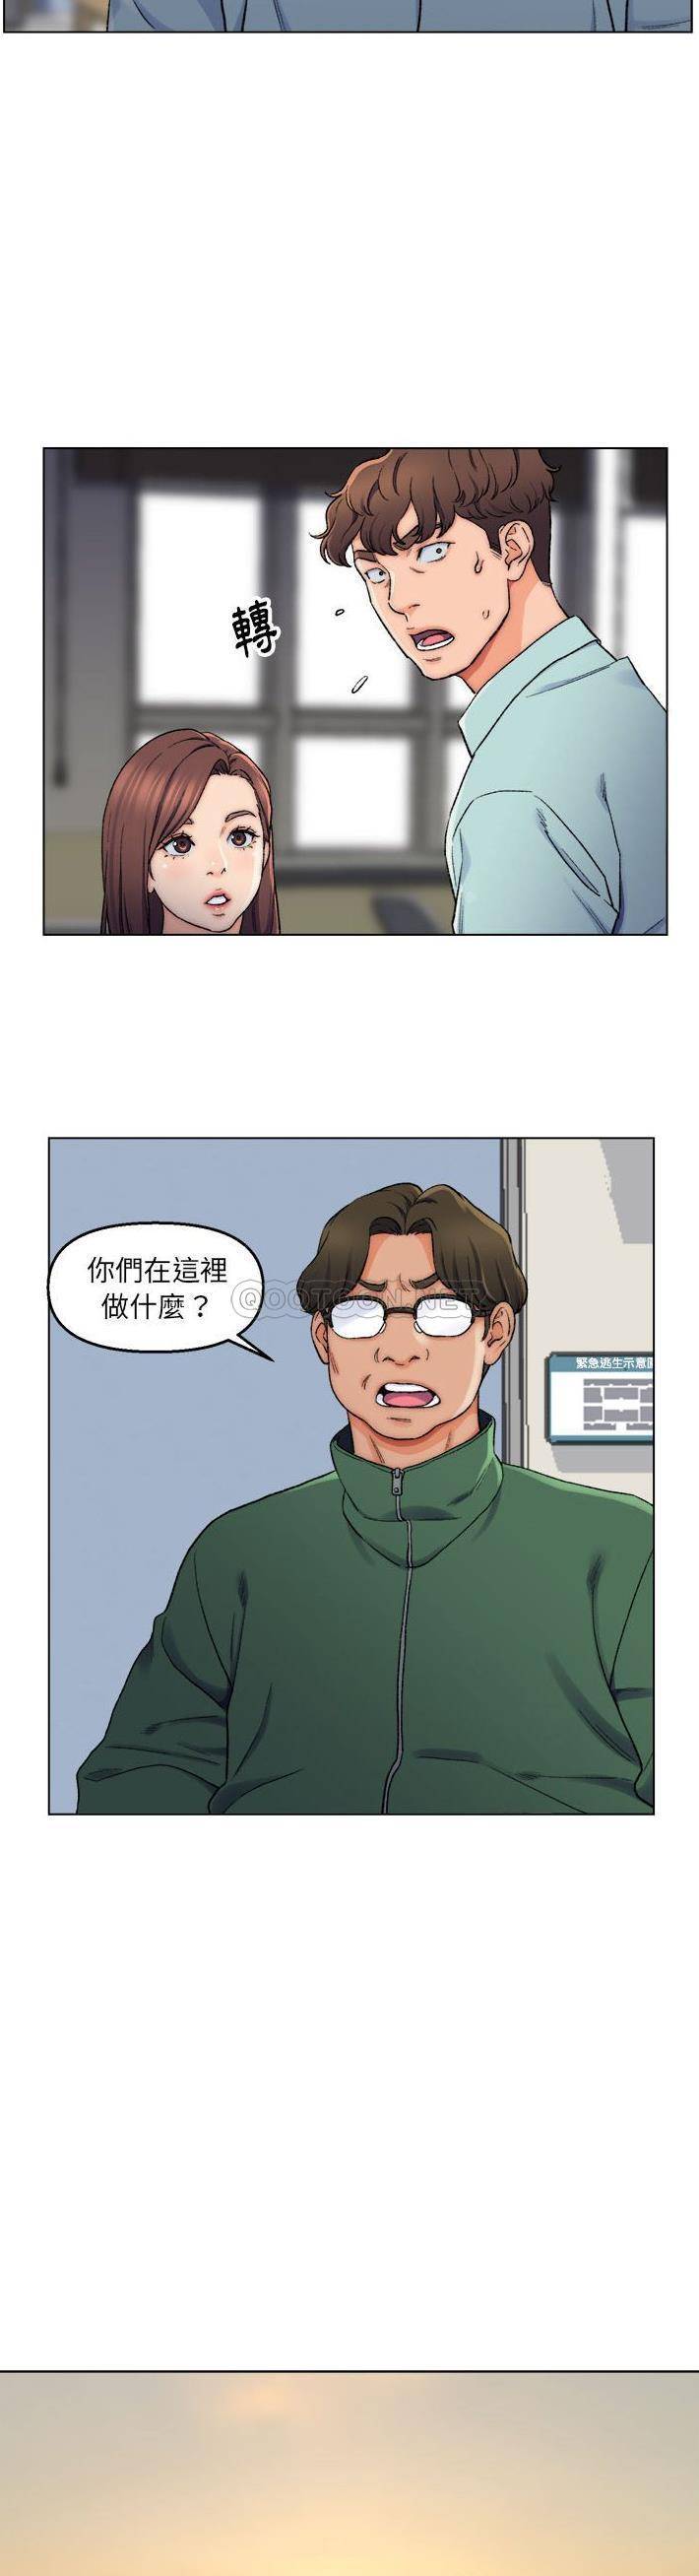 韩国污漫画 爸爸的壞朋友 第6话 3